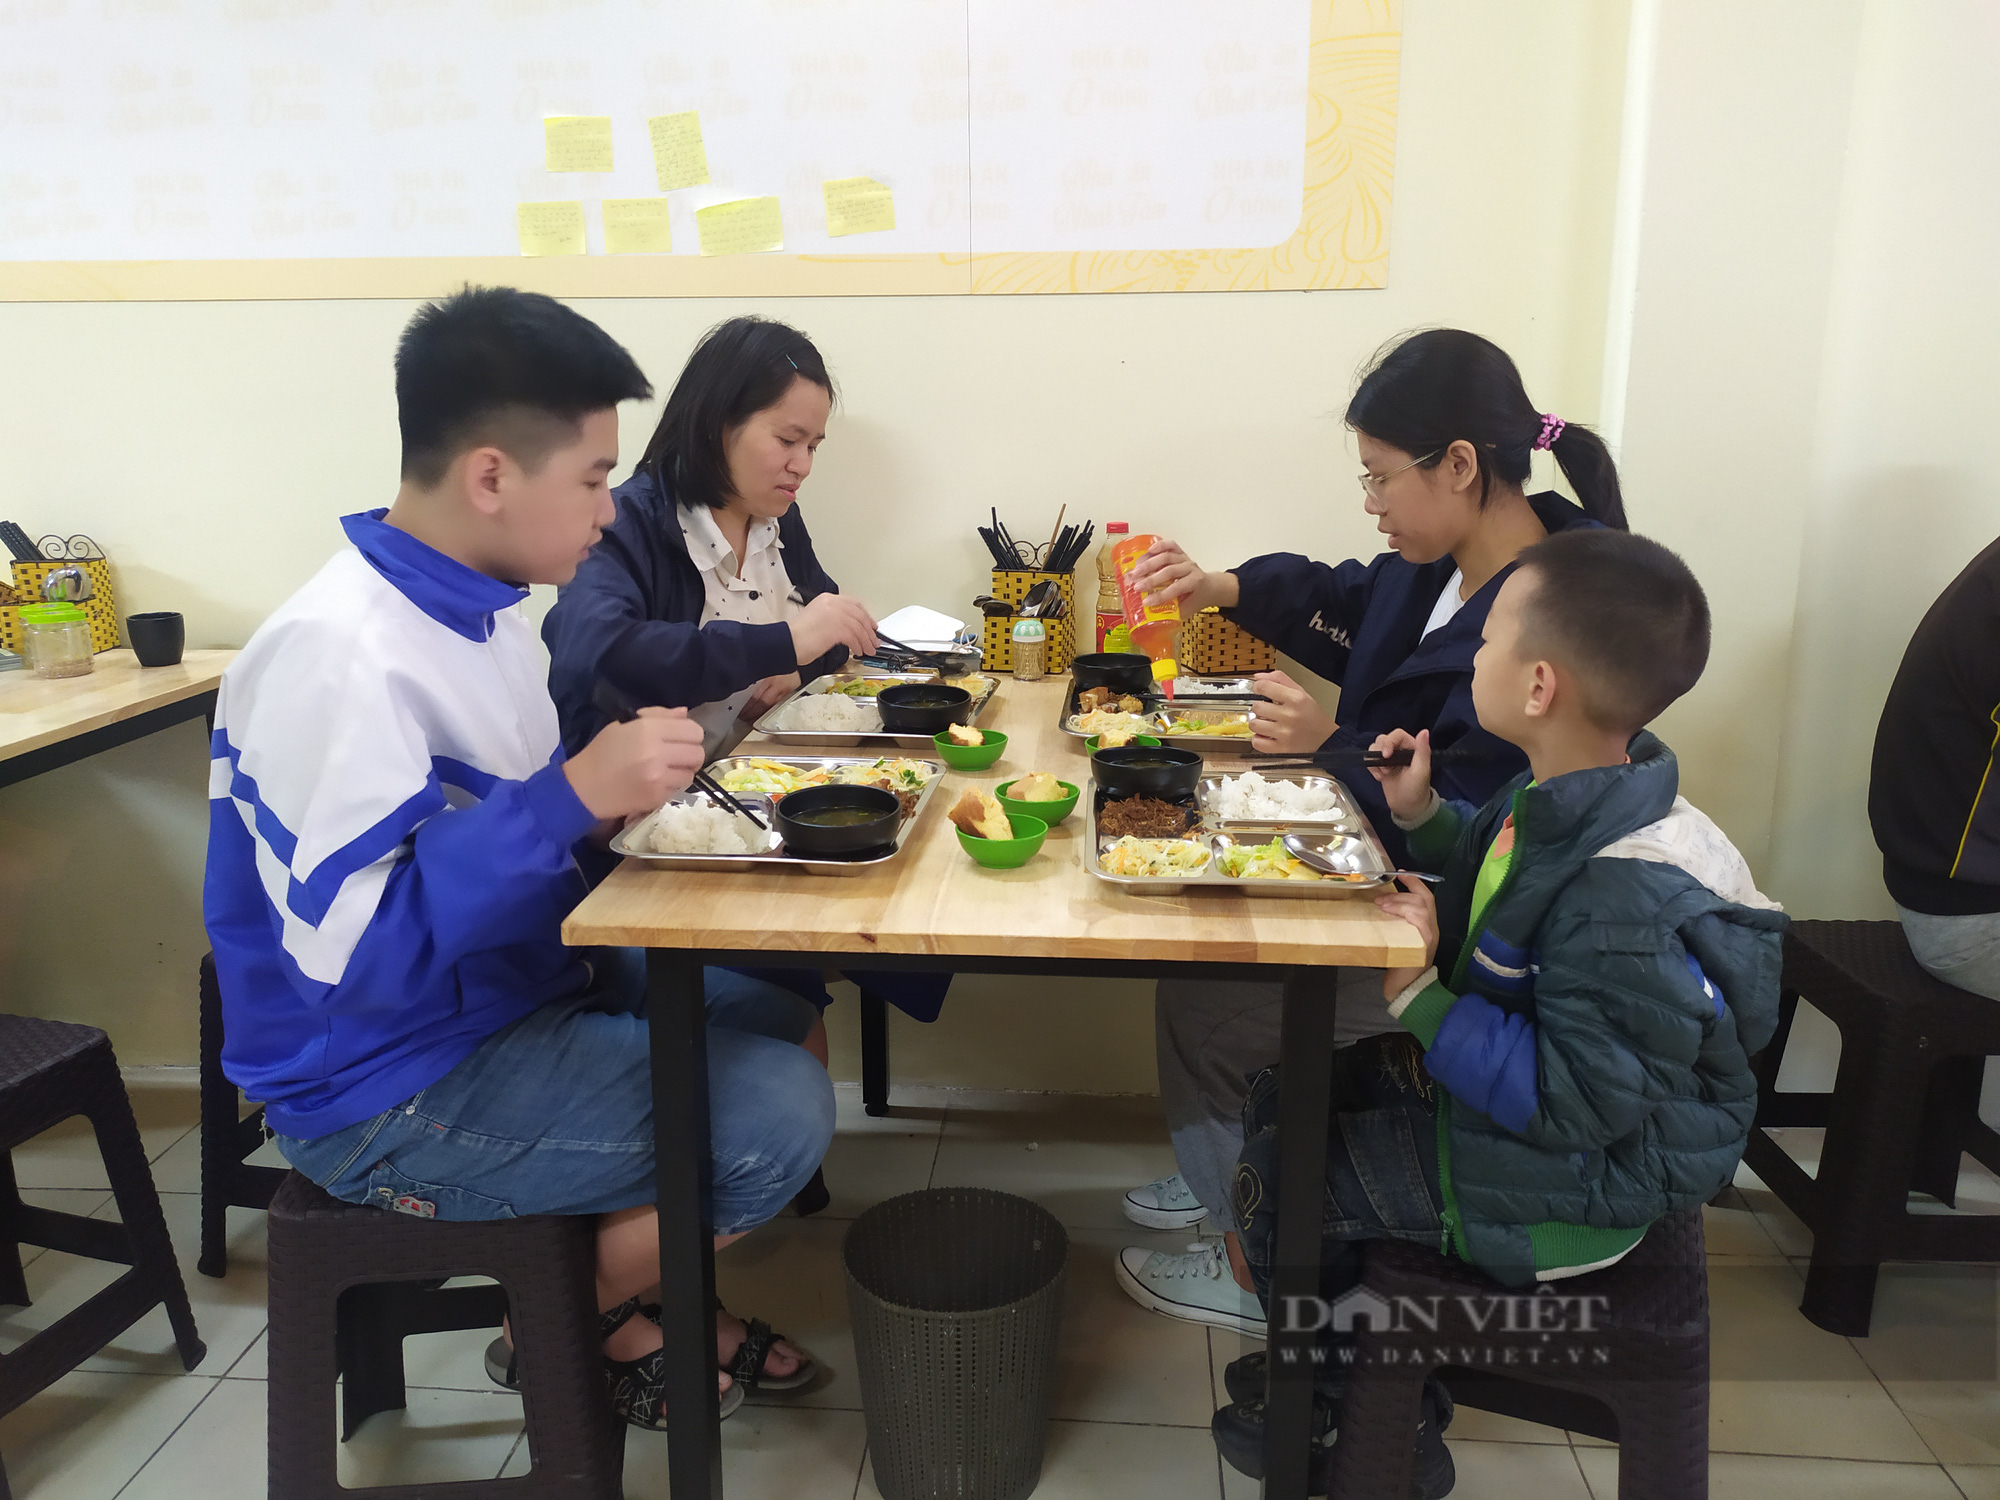 Quán chay 0 đồng phục vụ hàng trăm suất ăn mỗi ngày giữa lòng Thủ đô Hà Nội - Ảnh 6.